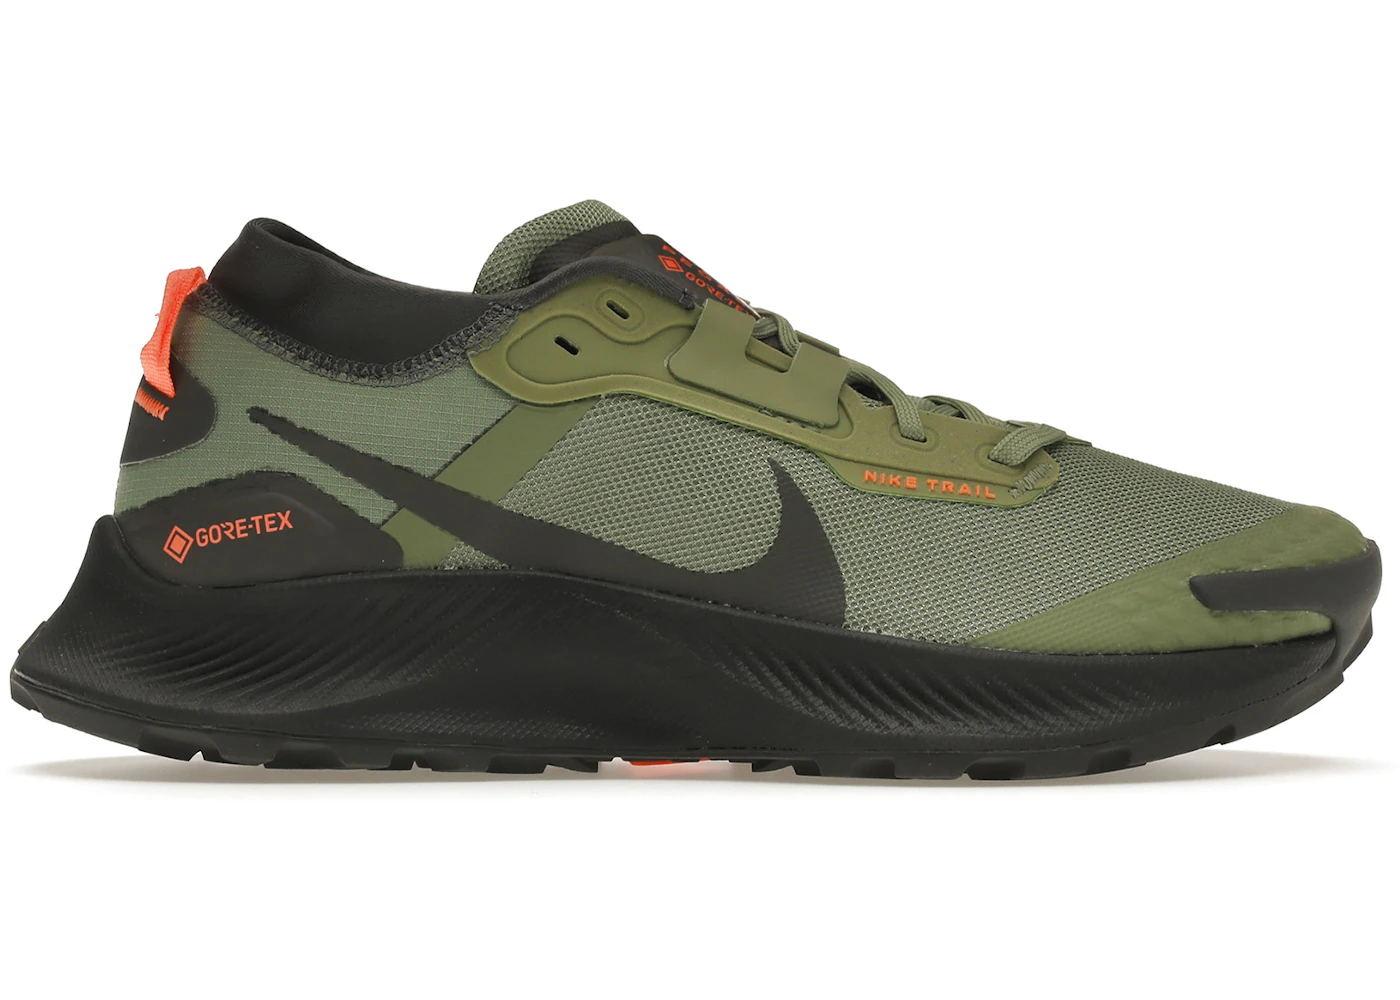 Nike Trail 3 Gore-Tex Oil Green Iron Grey Total Orange Men's - DO6728-300 - US